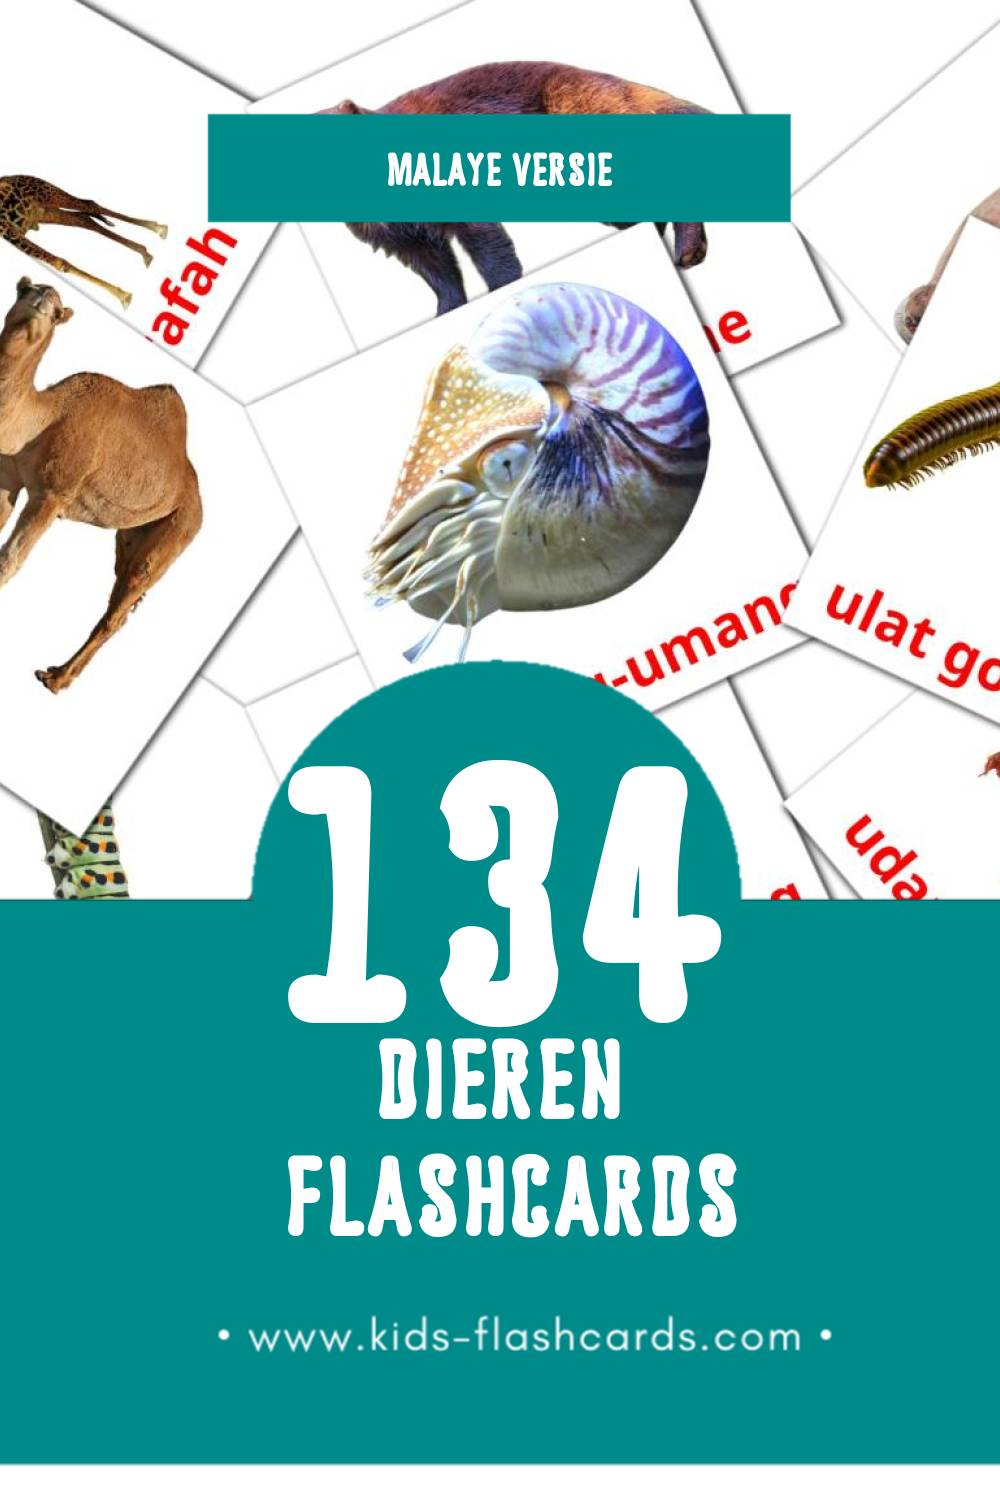 Visuele Haiwan Flashcards voor Kleuters (134 kaarten in het Malay)